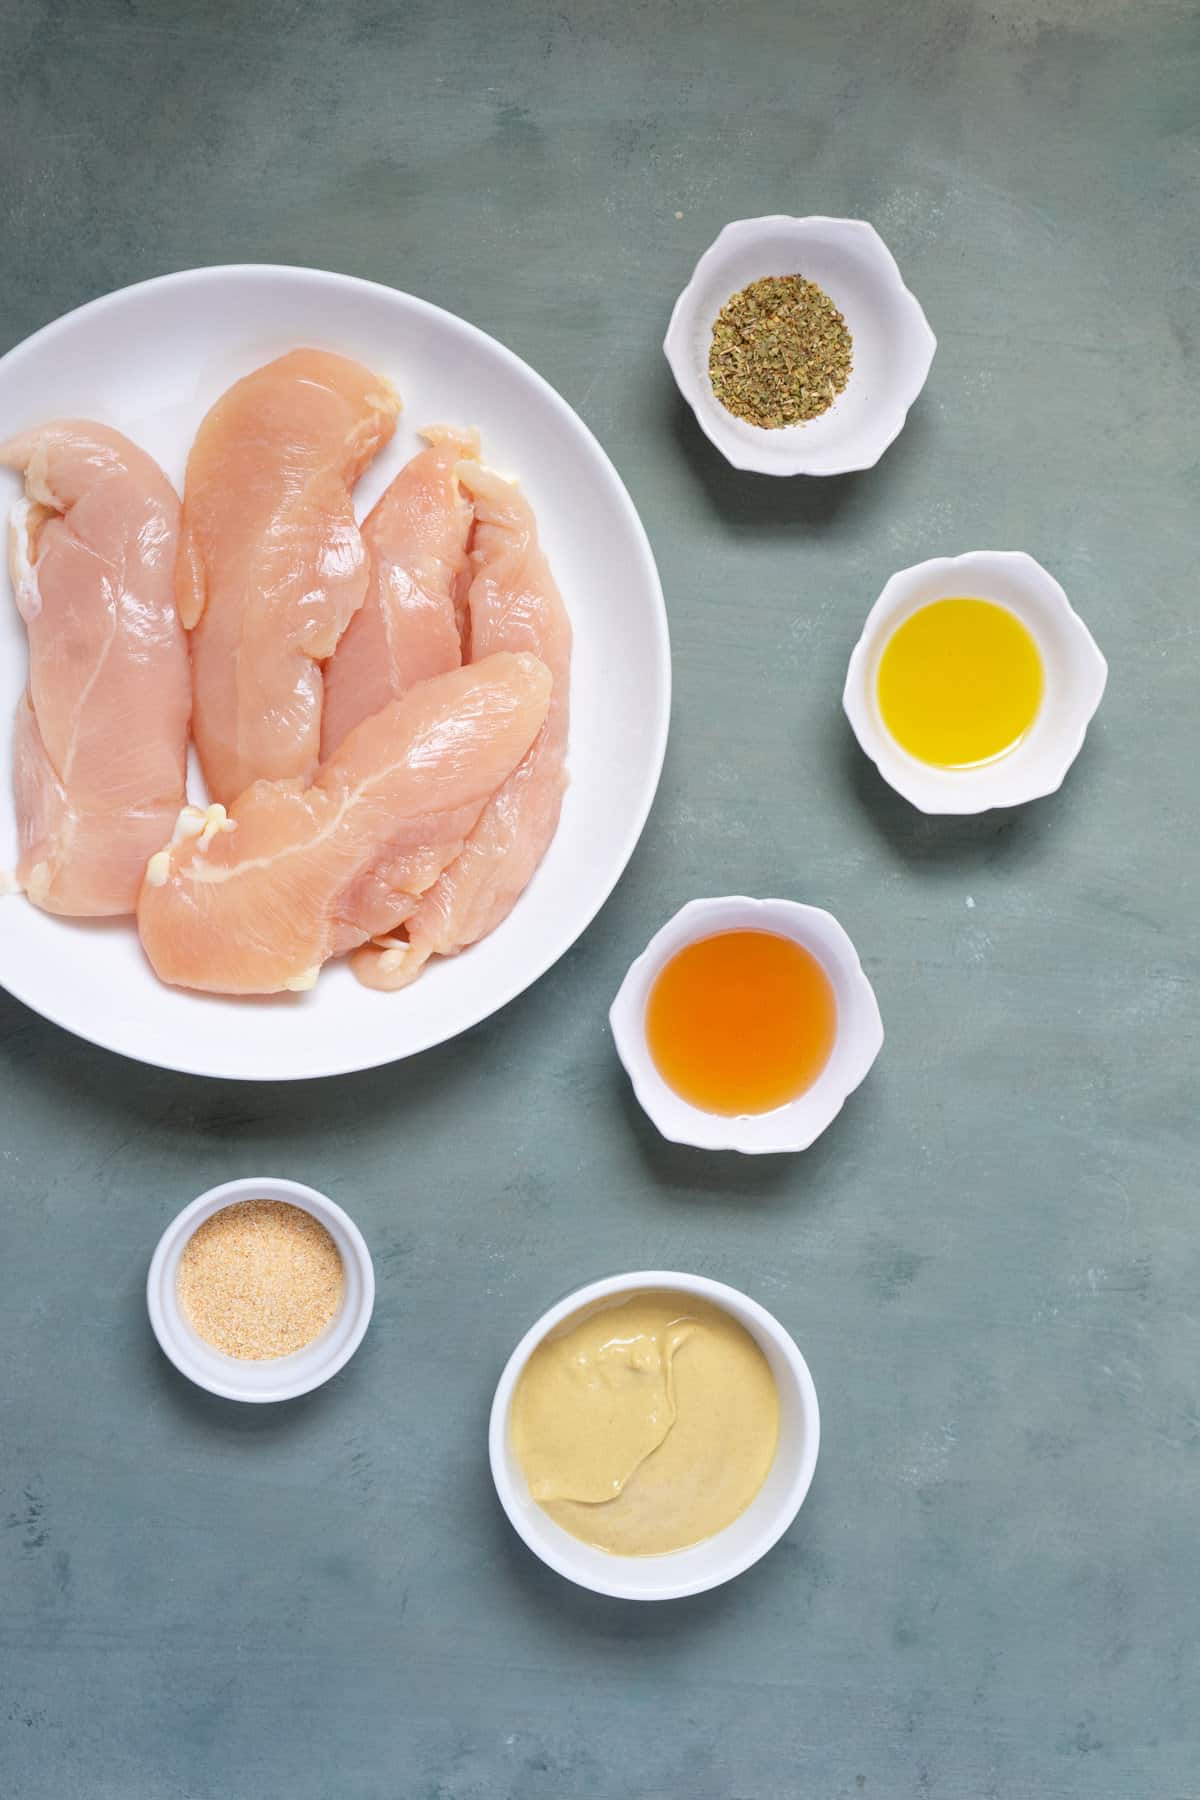 Ingredients to make honey mustard chicken tenders.